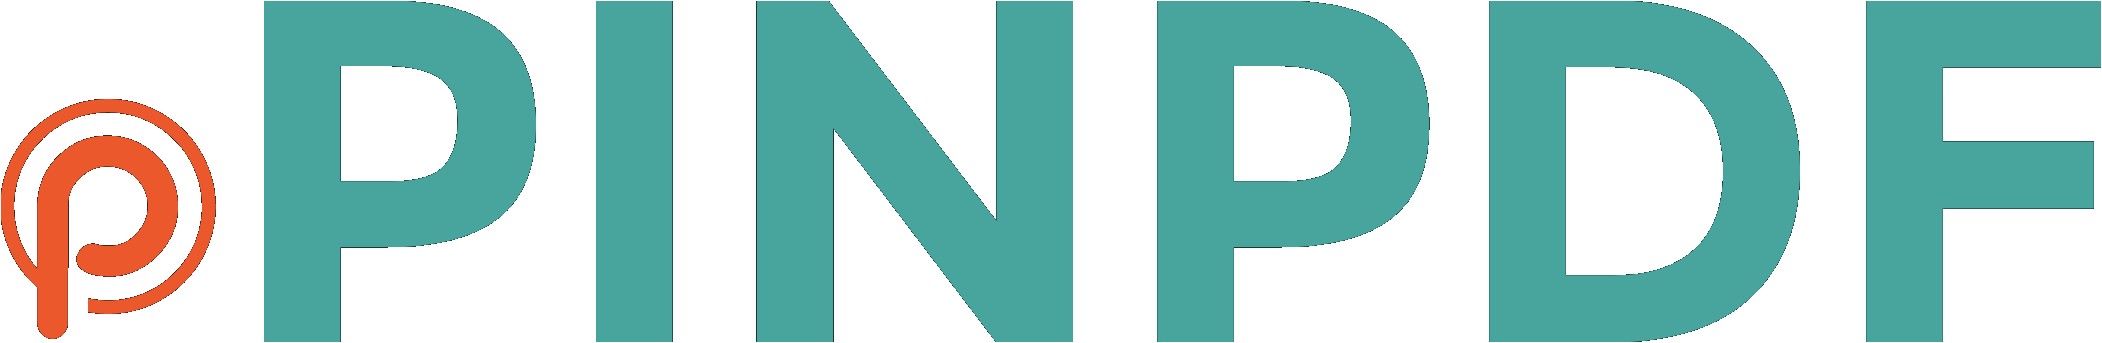 pinpdf logo